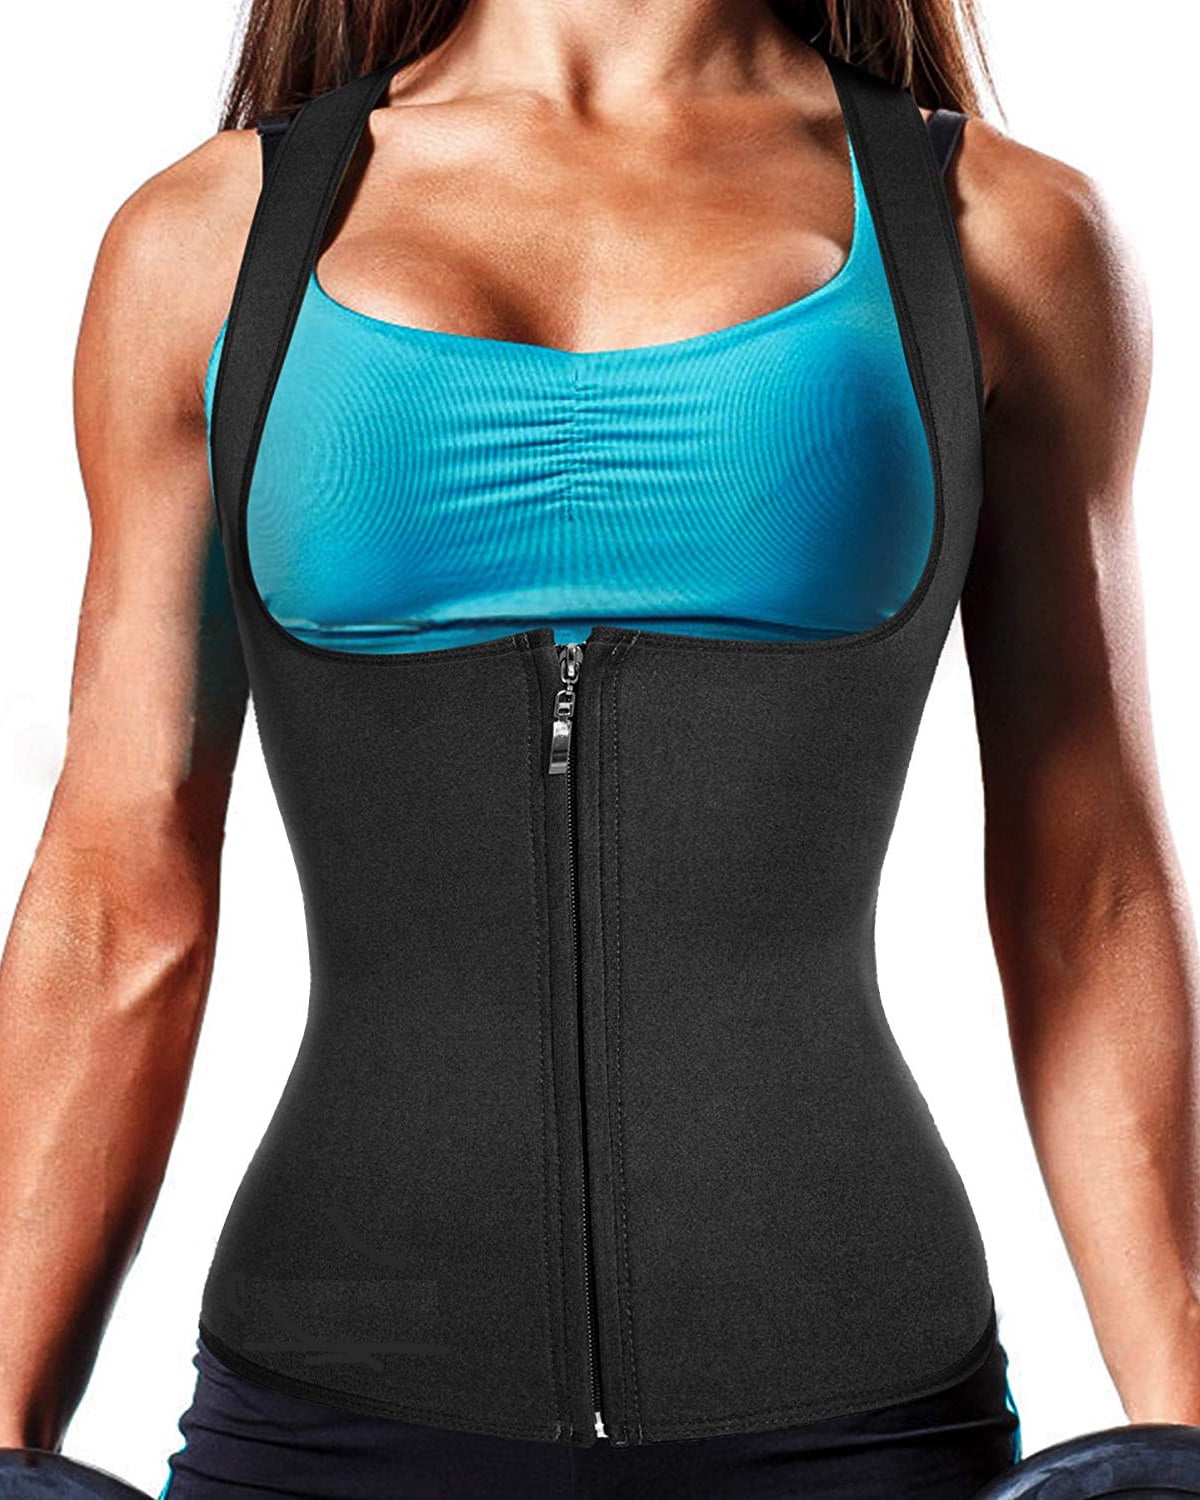 Women Hot Sweat Neoprene Tank Top Shirt Waist Trainer Vest Zipper Corset Body Shaper Cincher Training Workout